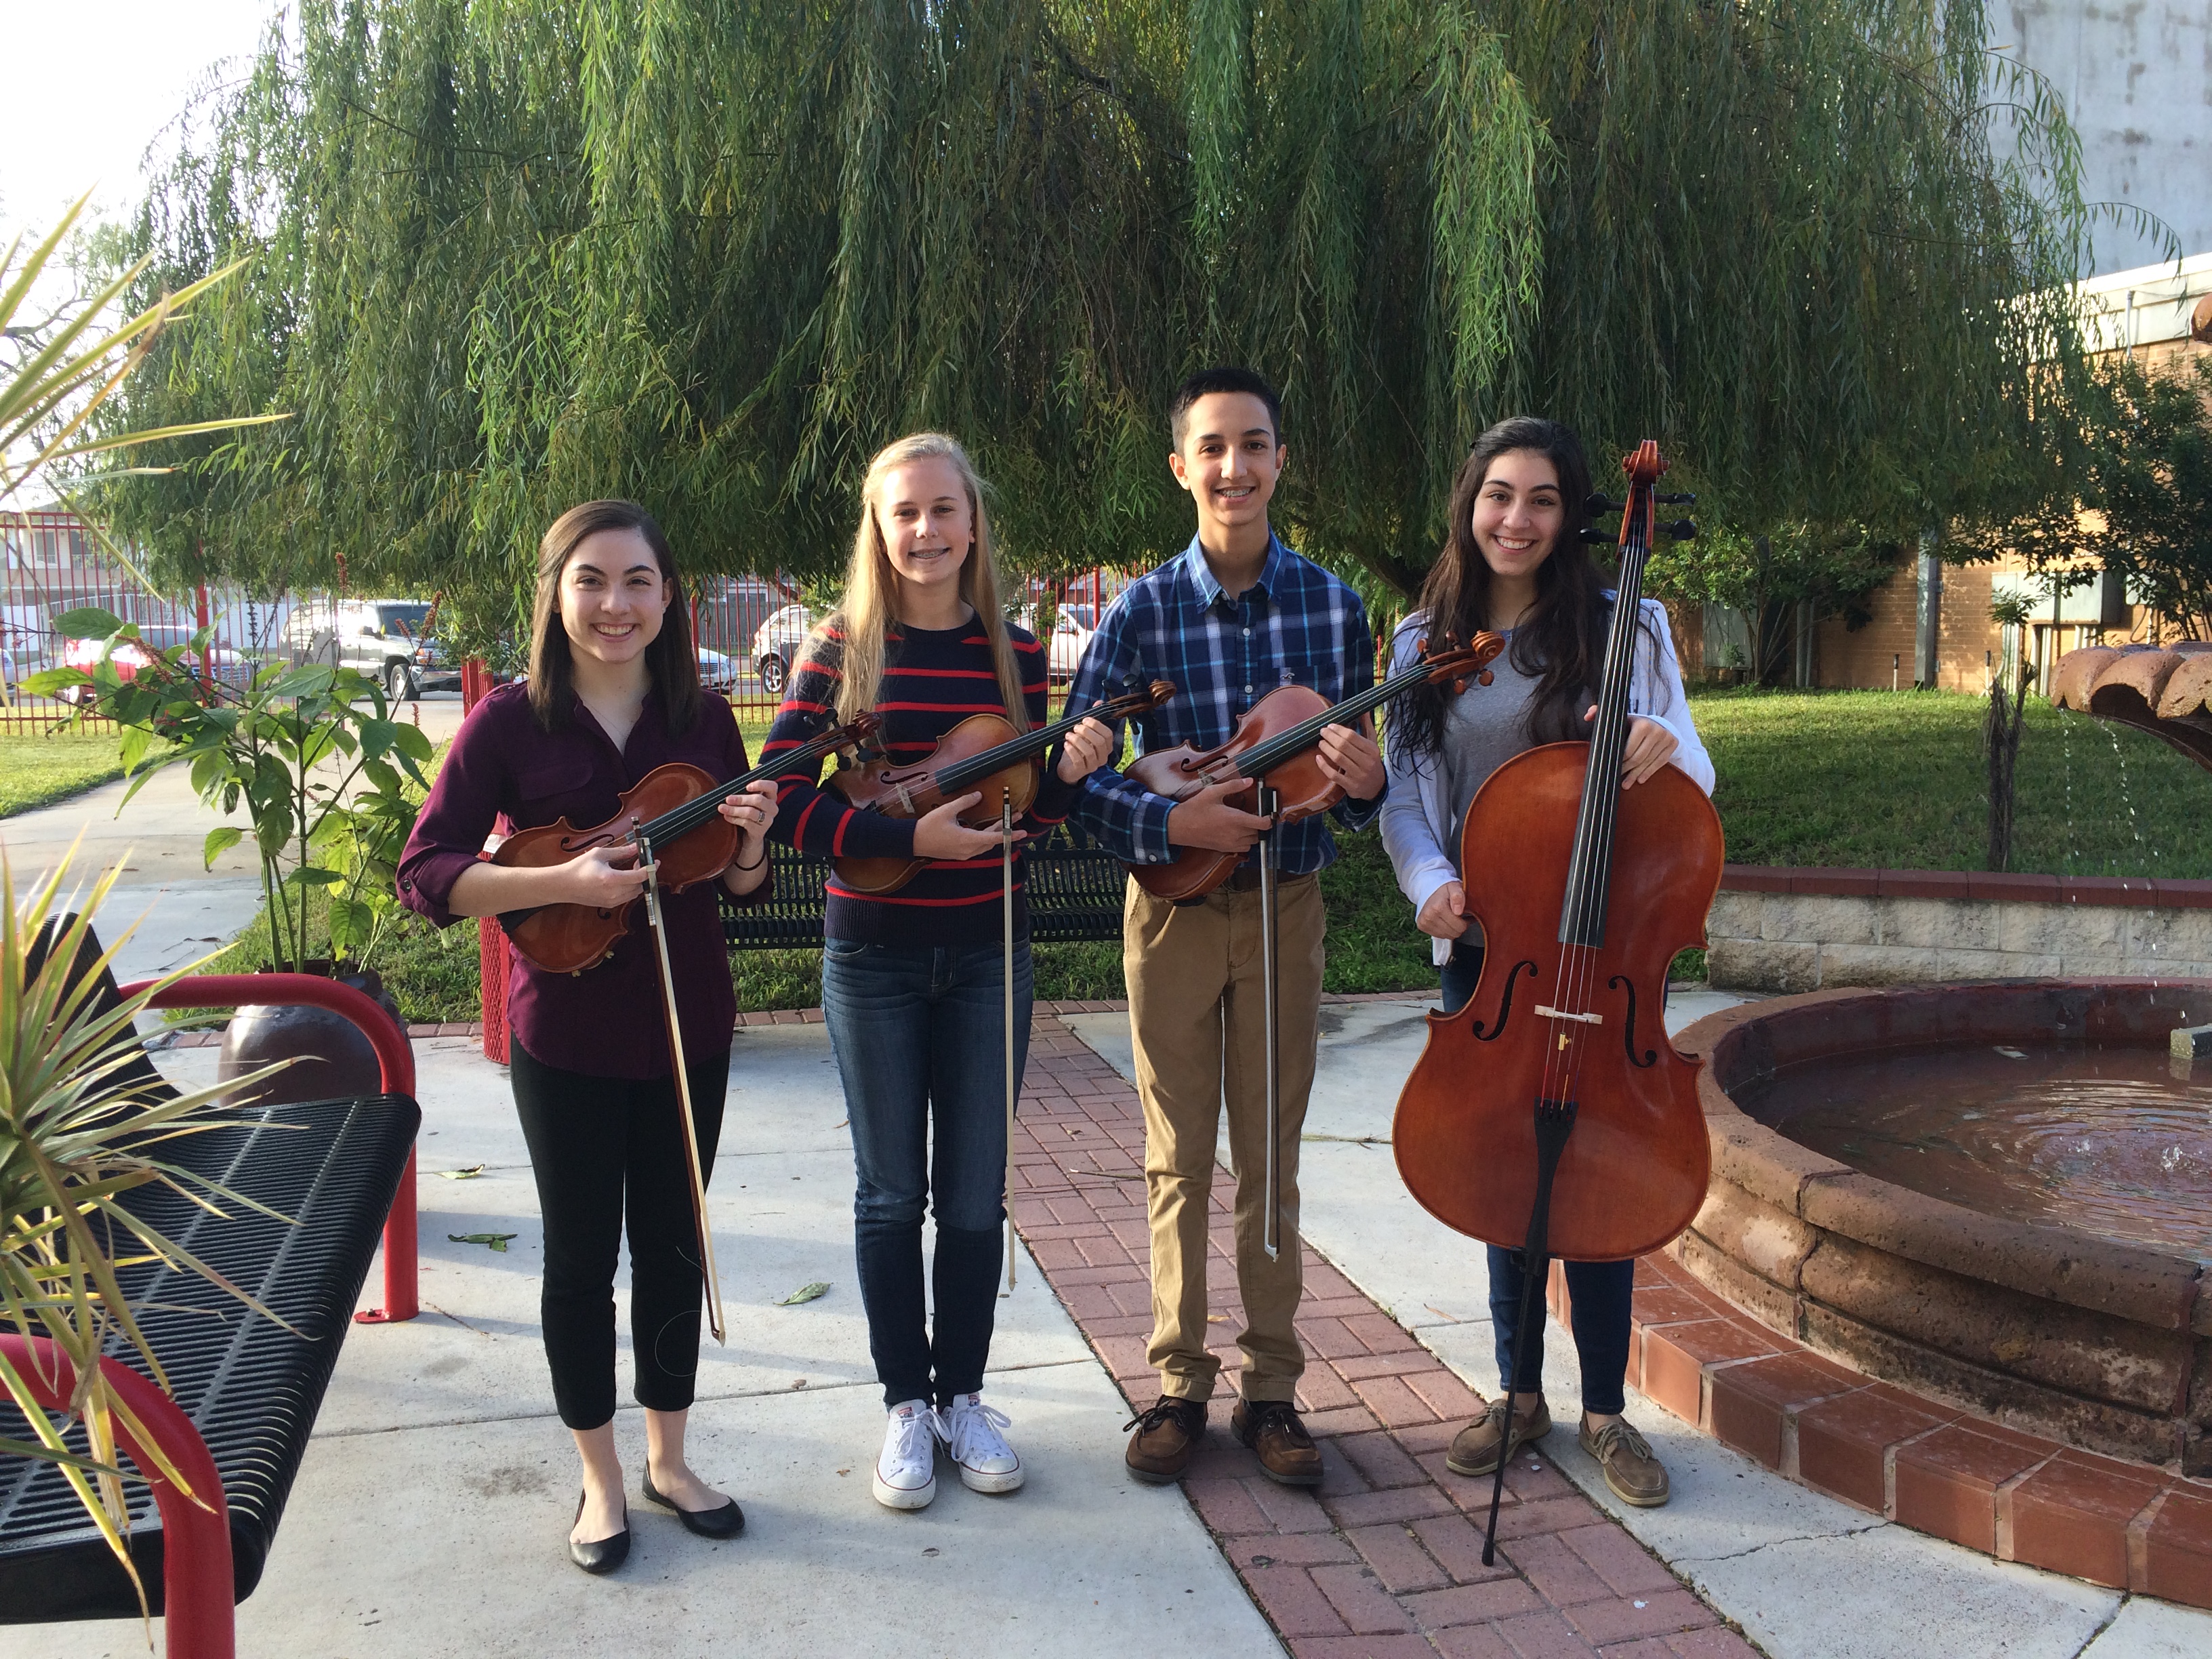 Multi-school string quartet creates sweet harmonies